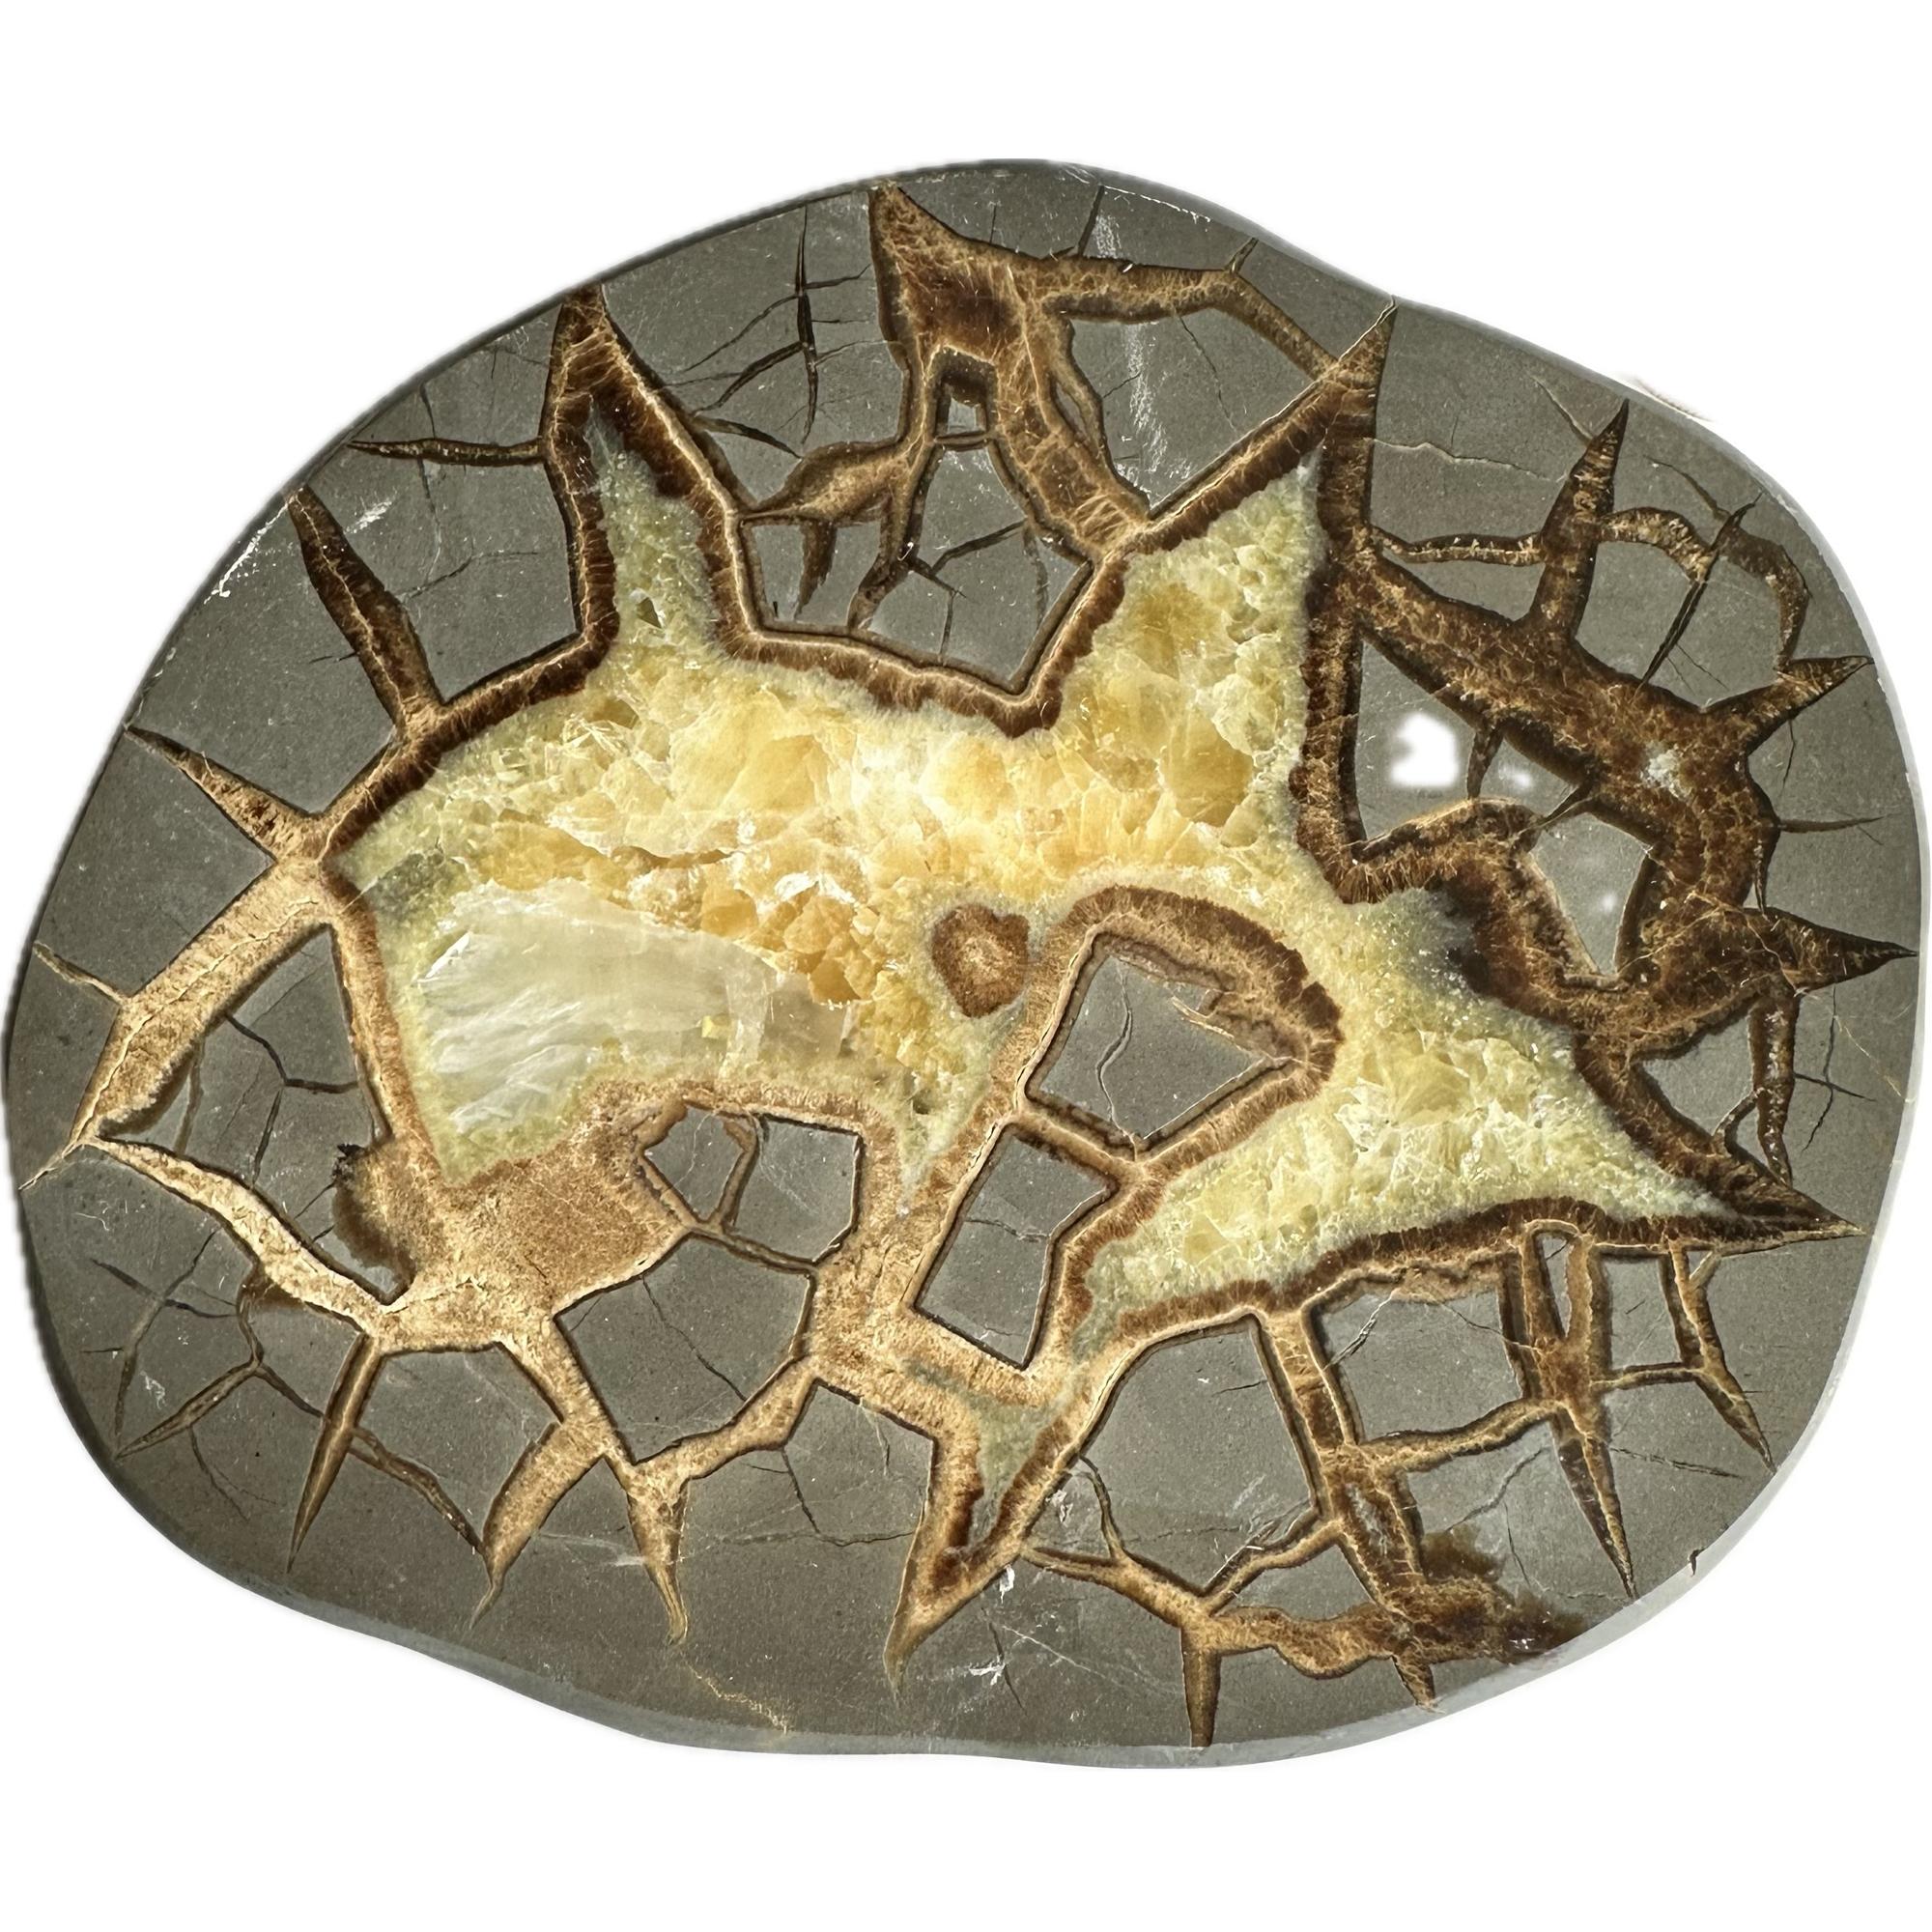 Septarian Slice – Utah, white and golden calcite Prehistoric Online